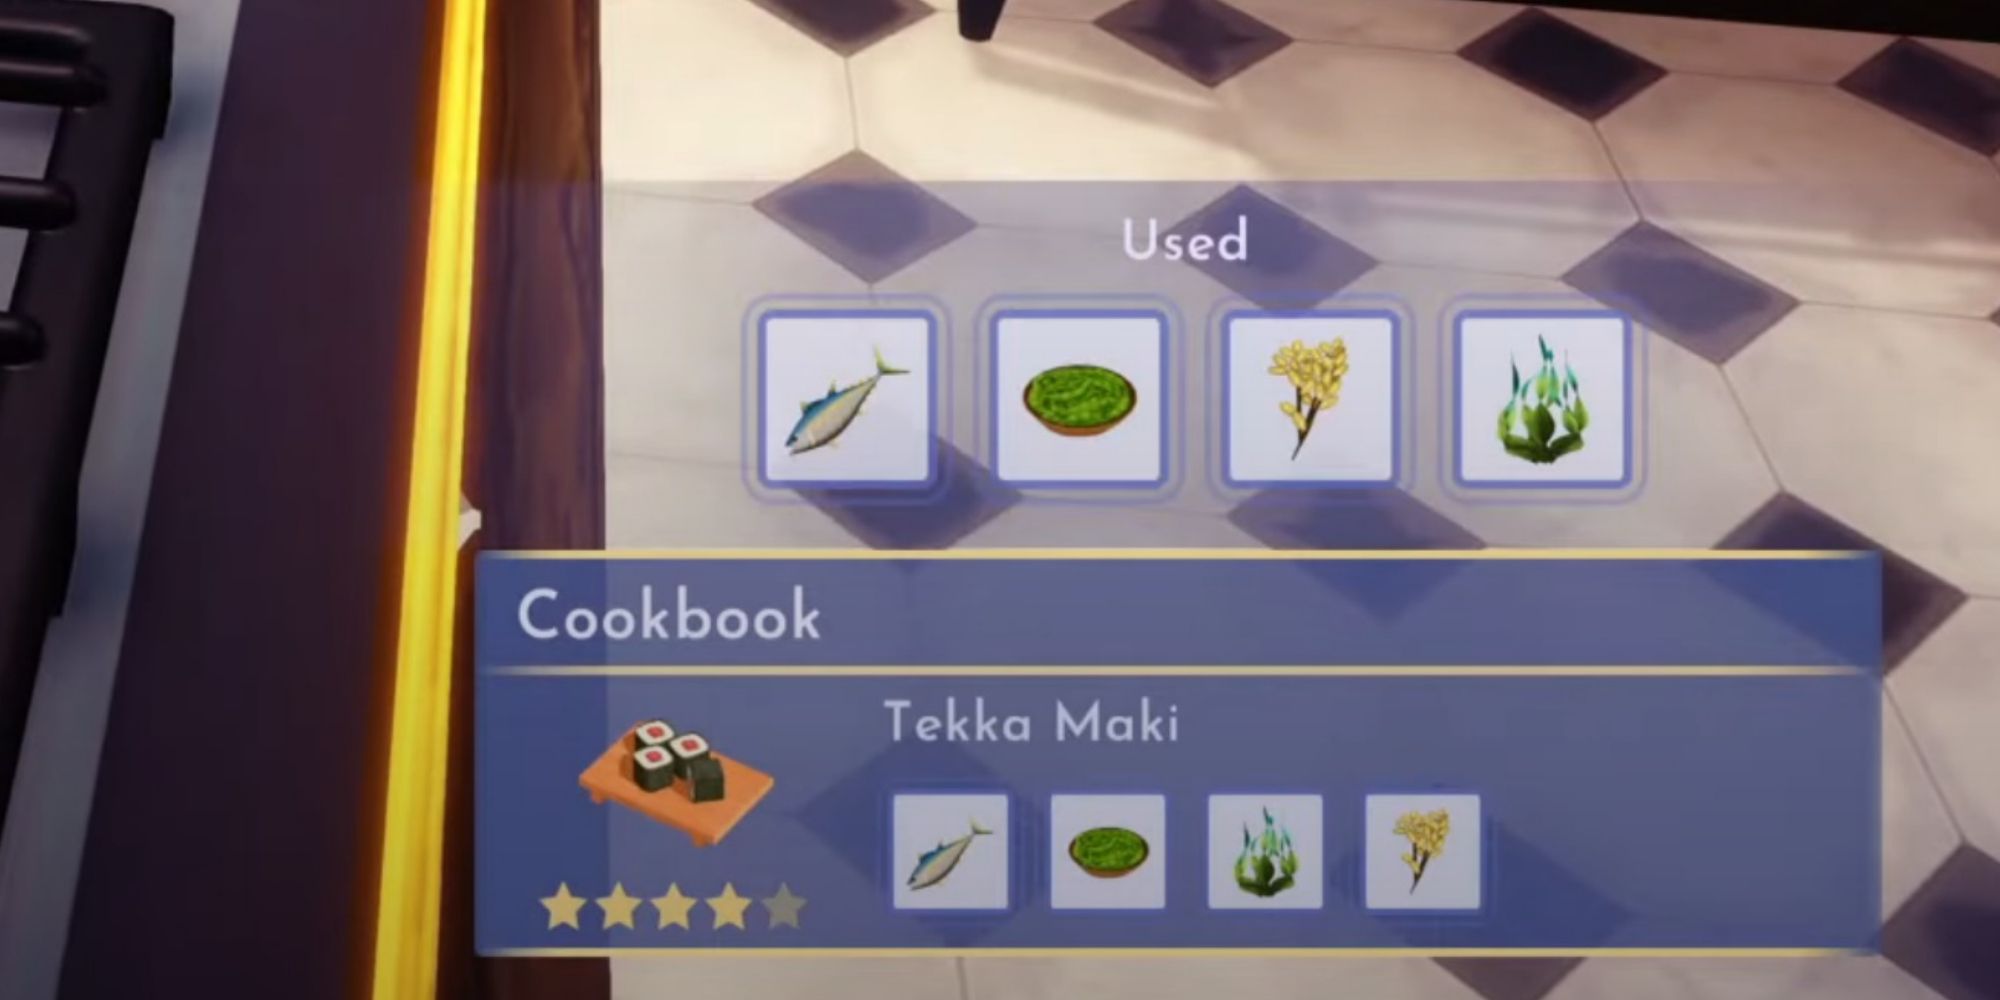 cookbook recipe for tekka maki in-game